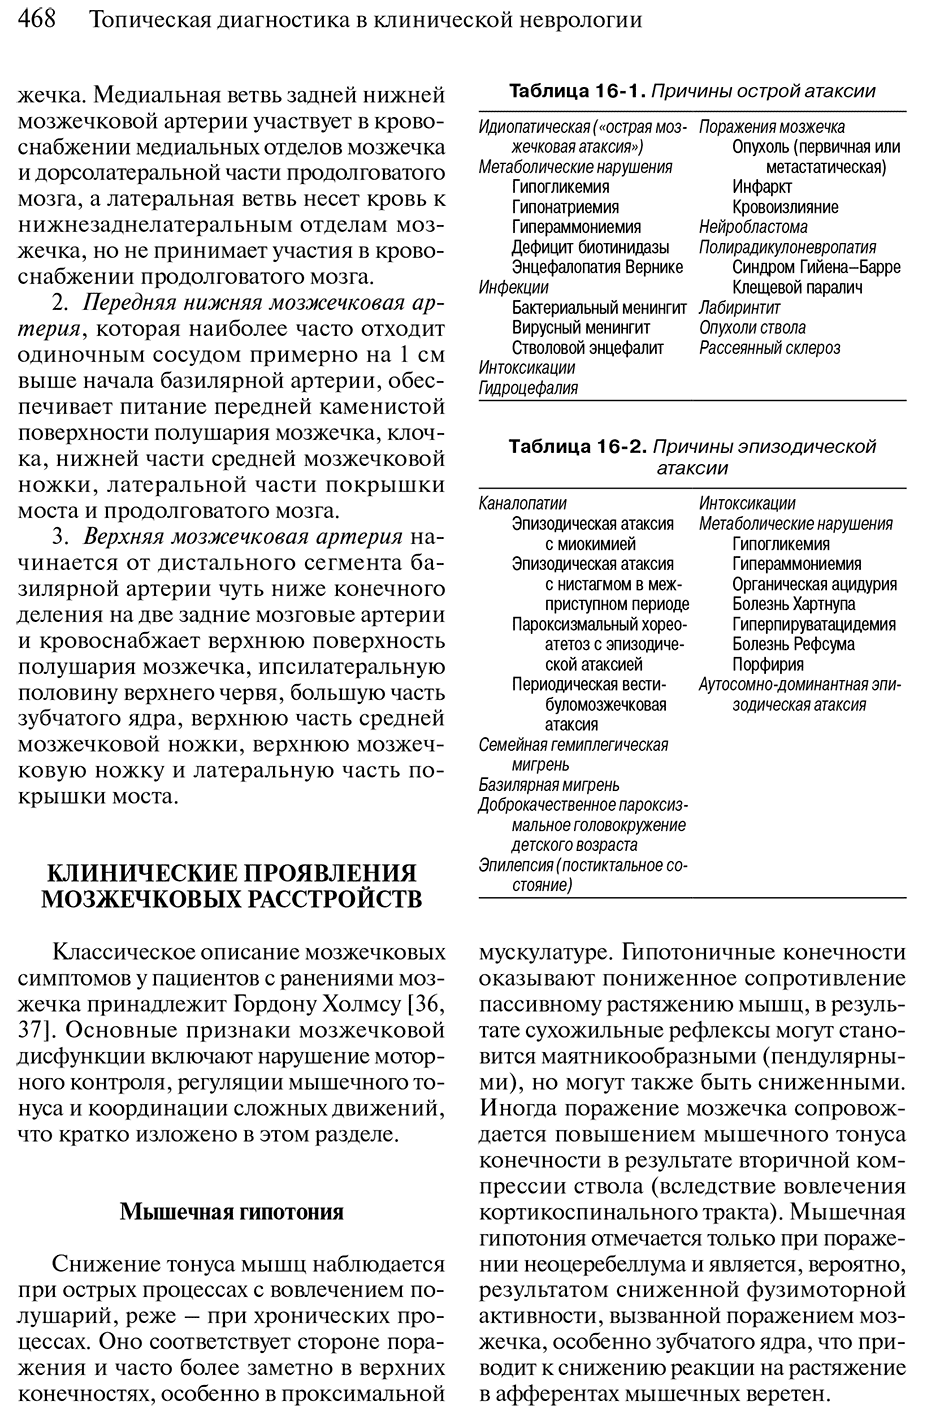 Пример страницы из книги "Топическая диагностика в клинической неврологии" - Бразис П. У., Мэсдью Д. К.